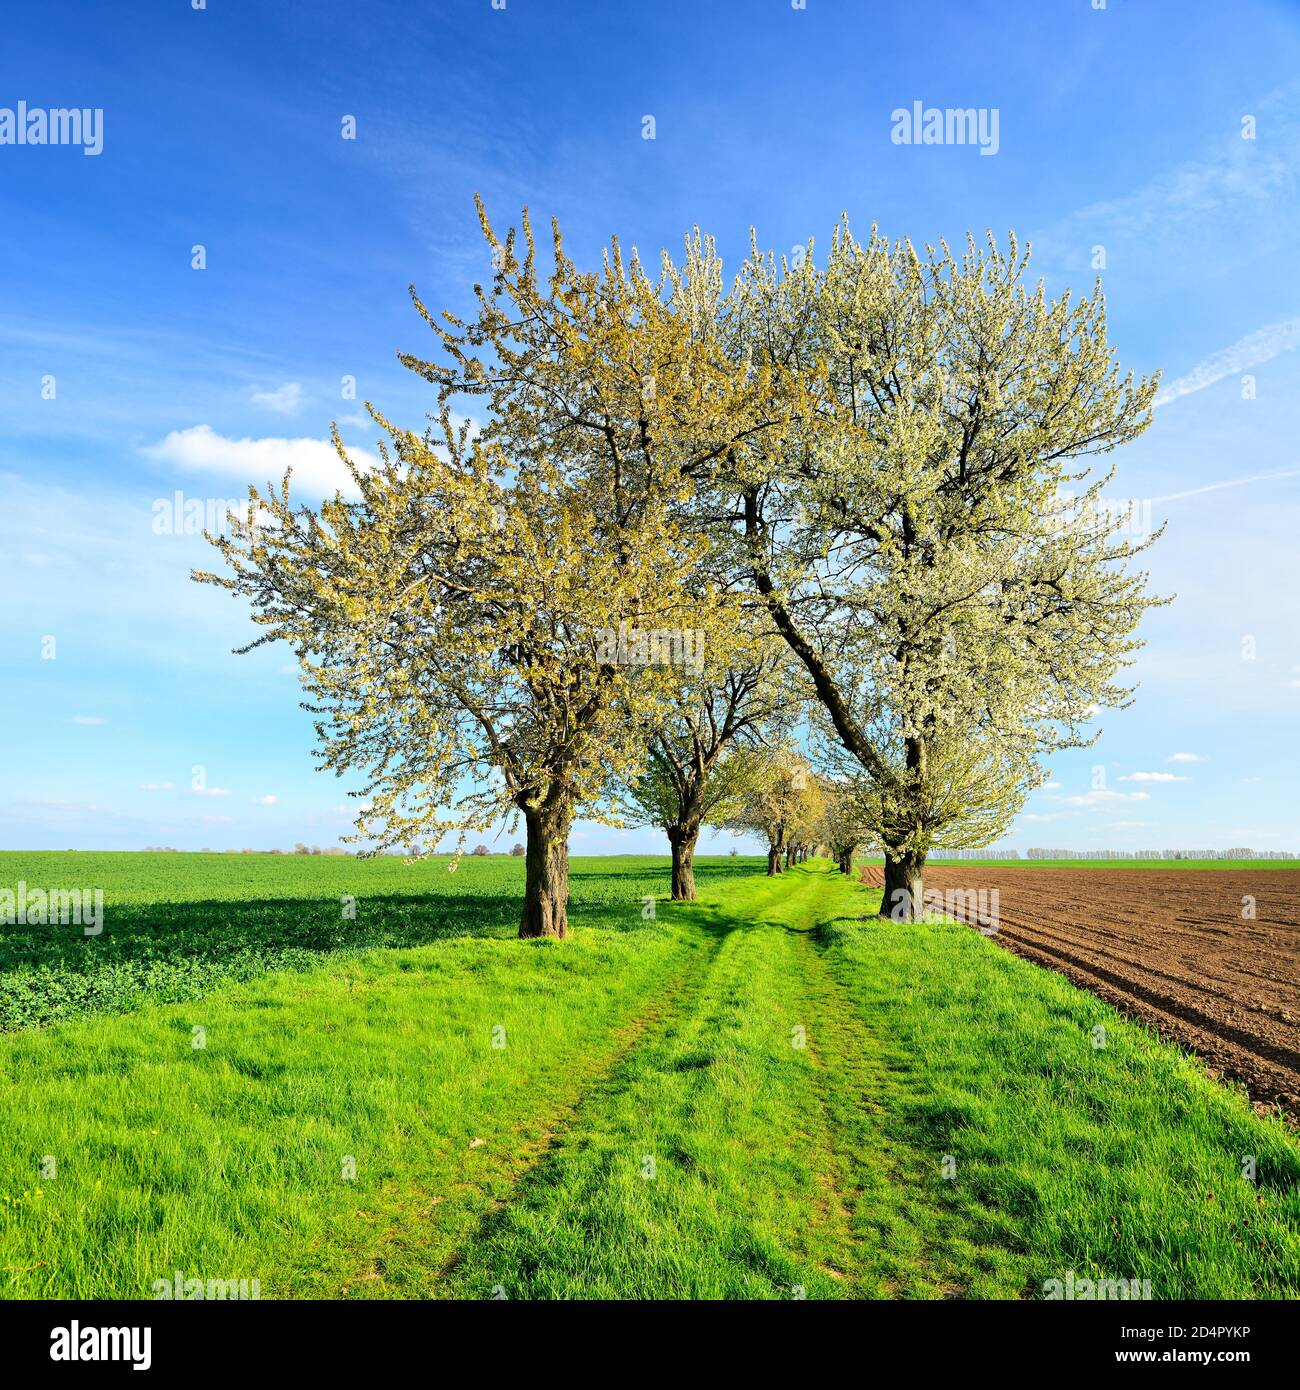 Campo percorso con alberi di ciliegio in fiore, campi verdi, campi arati, cielo blu con nuvole, Burgenlandkreis, Sassonia-Anhalt, Germania, Europa Foto Stock